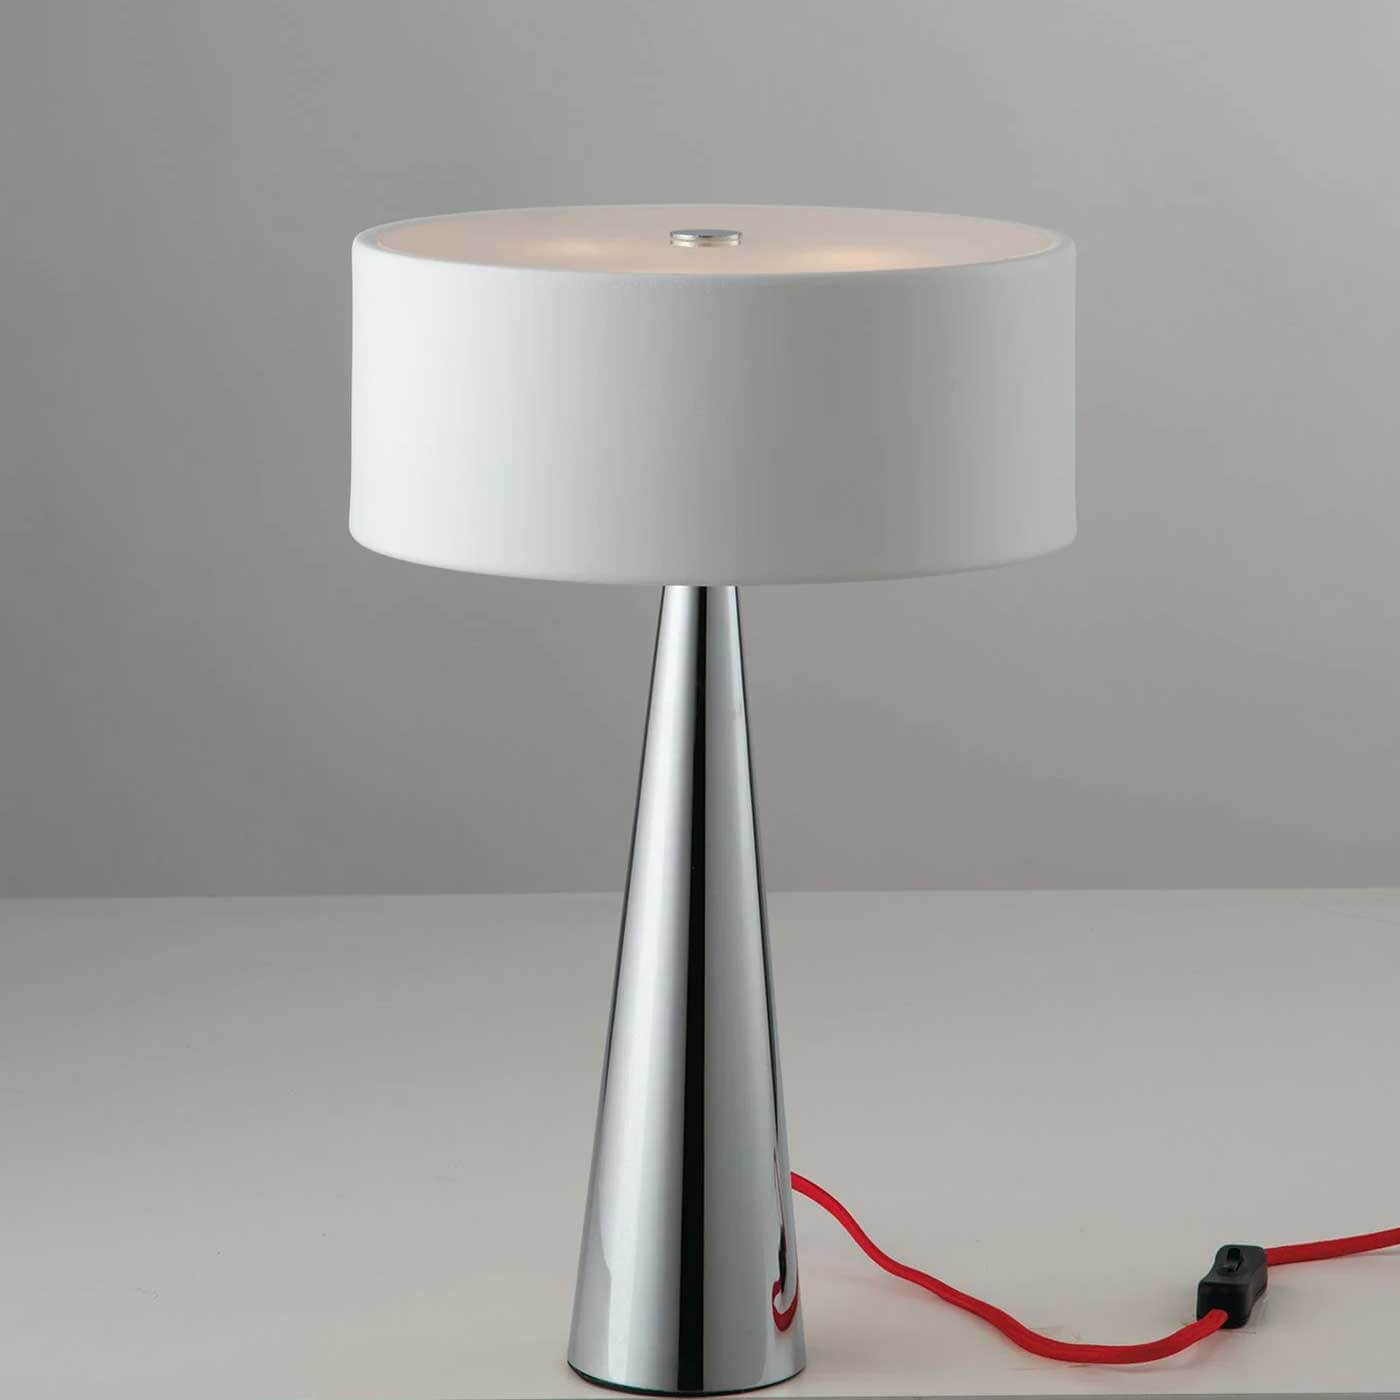 Faneurope Heminguay G9 stolní svítidlo lampa